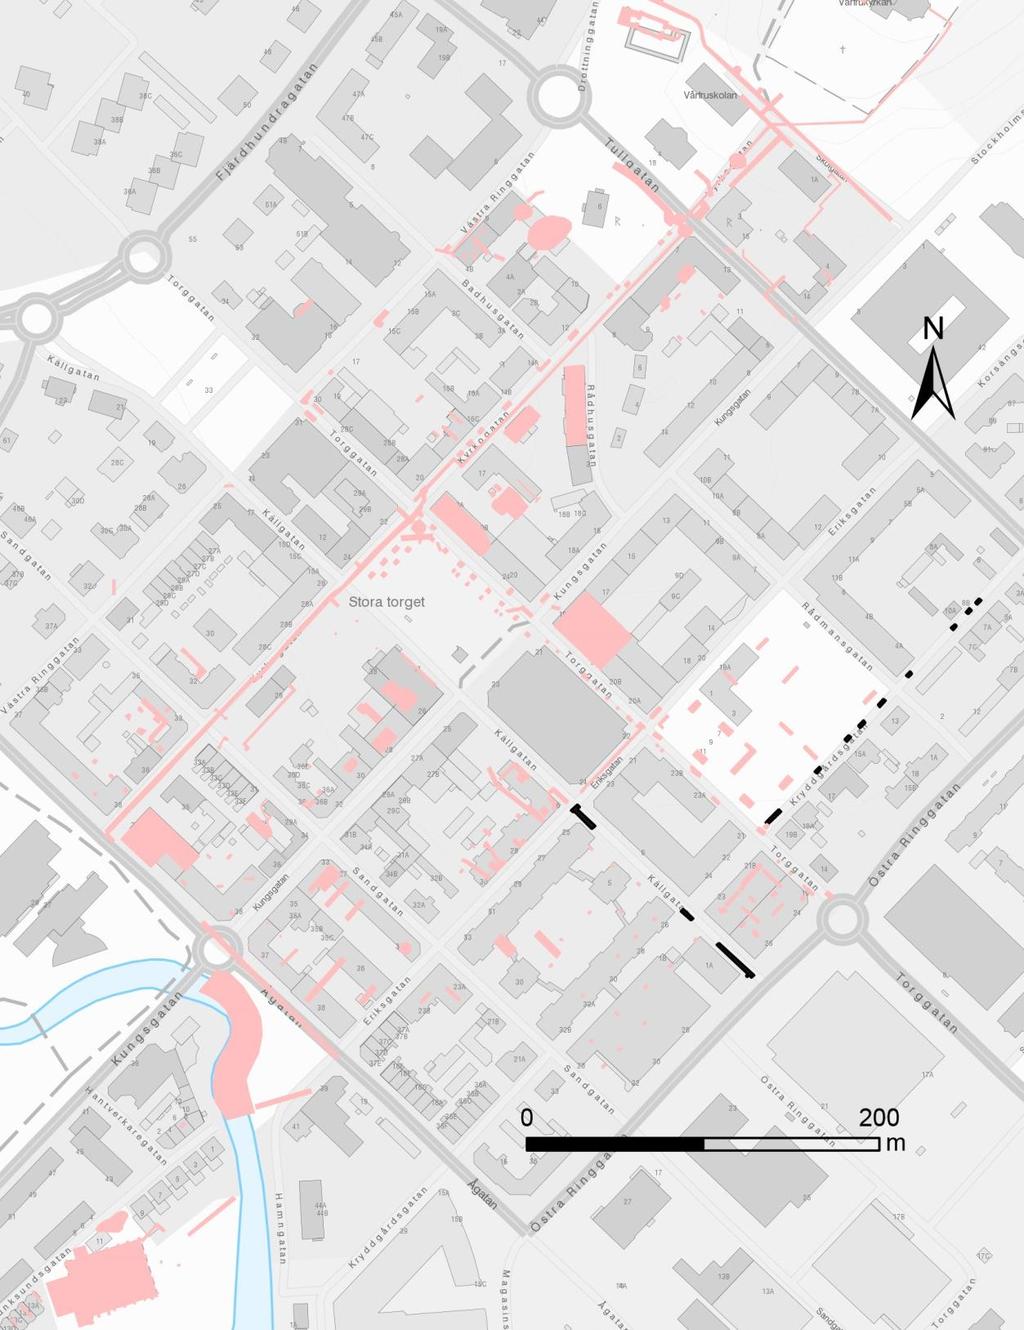 Figur 3. Utdrag ur topografiska kartan med arkeologiska insatser före 2010 i rosa. De aktuella schakten svart. Karta från StadsGIS. Skala 1:4 000.